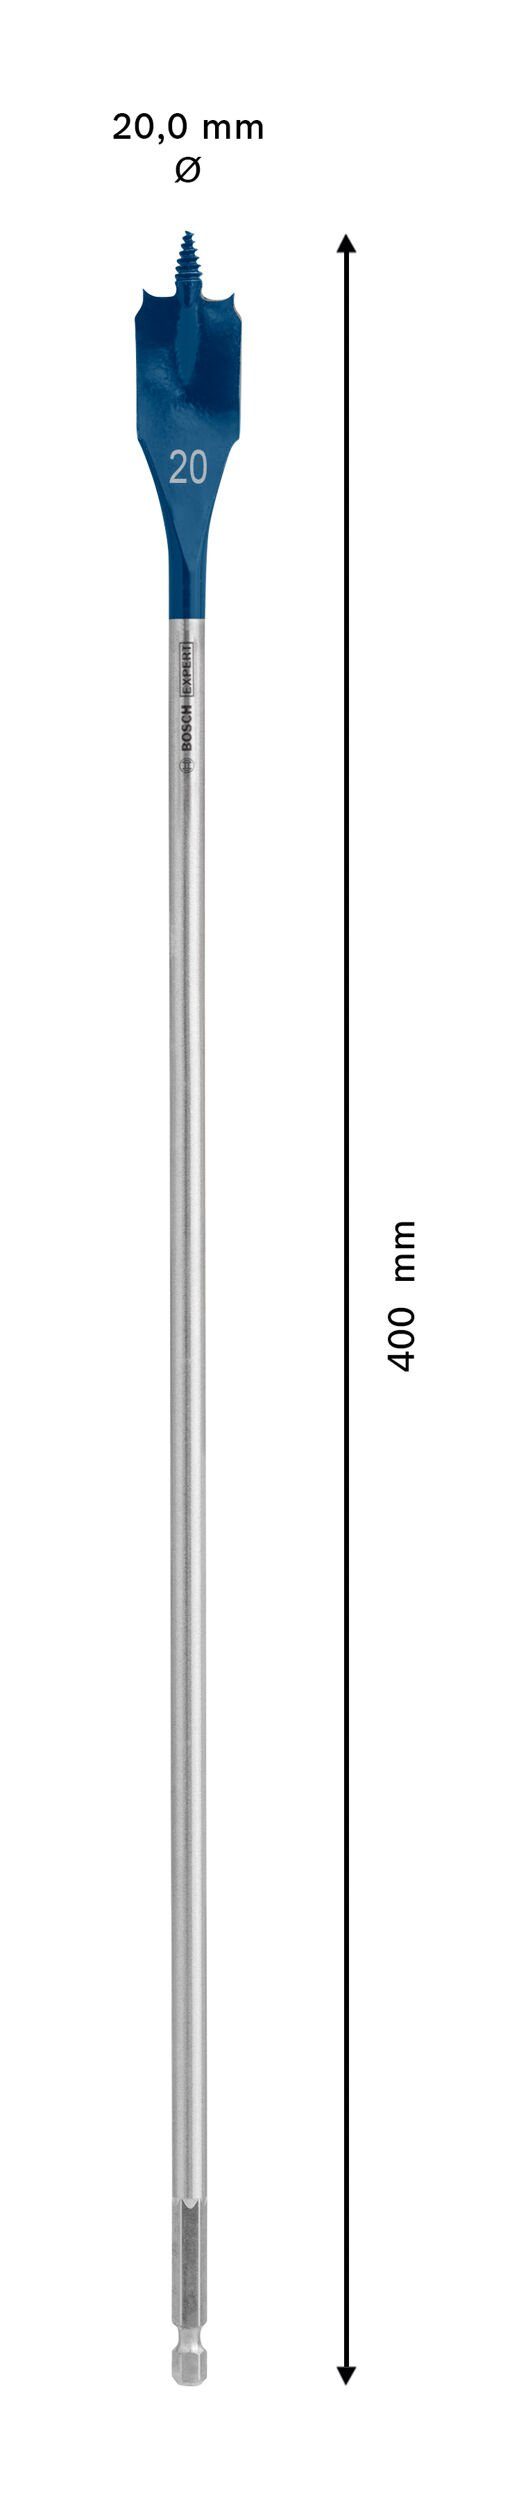 Speed, Flachfräsbohrer 20 BOSCH 400 mm Holzbohrer - Expert SelfCut Bosch Sechskant Accessories x